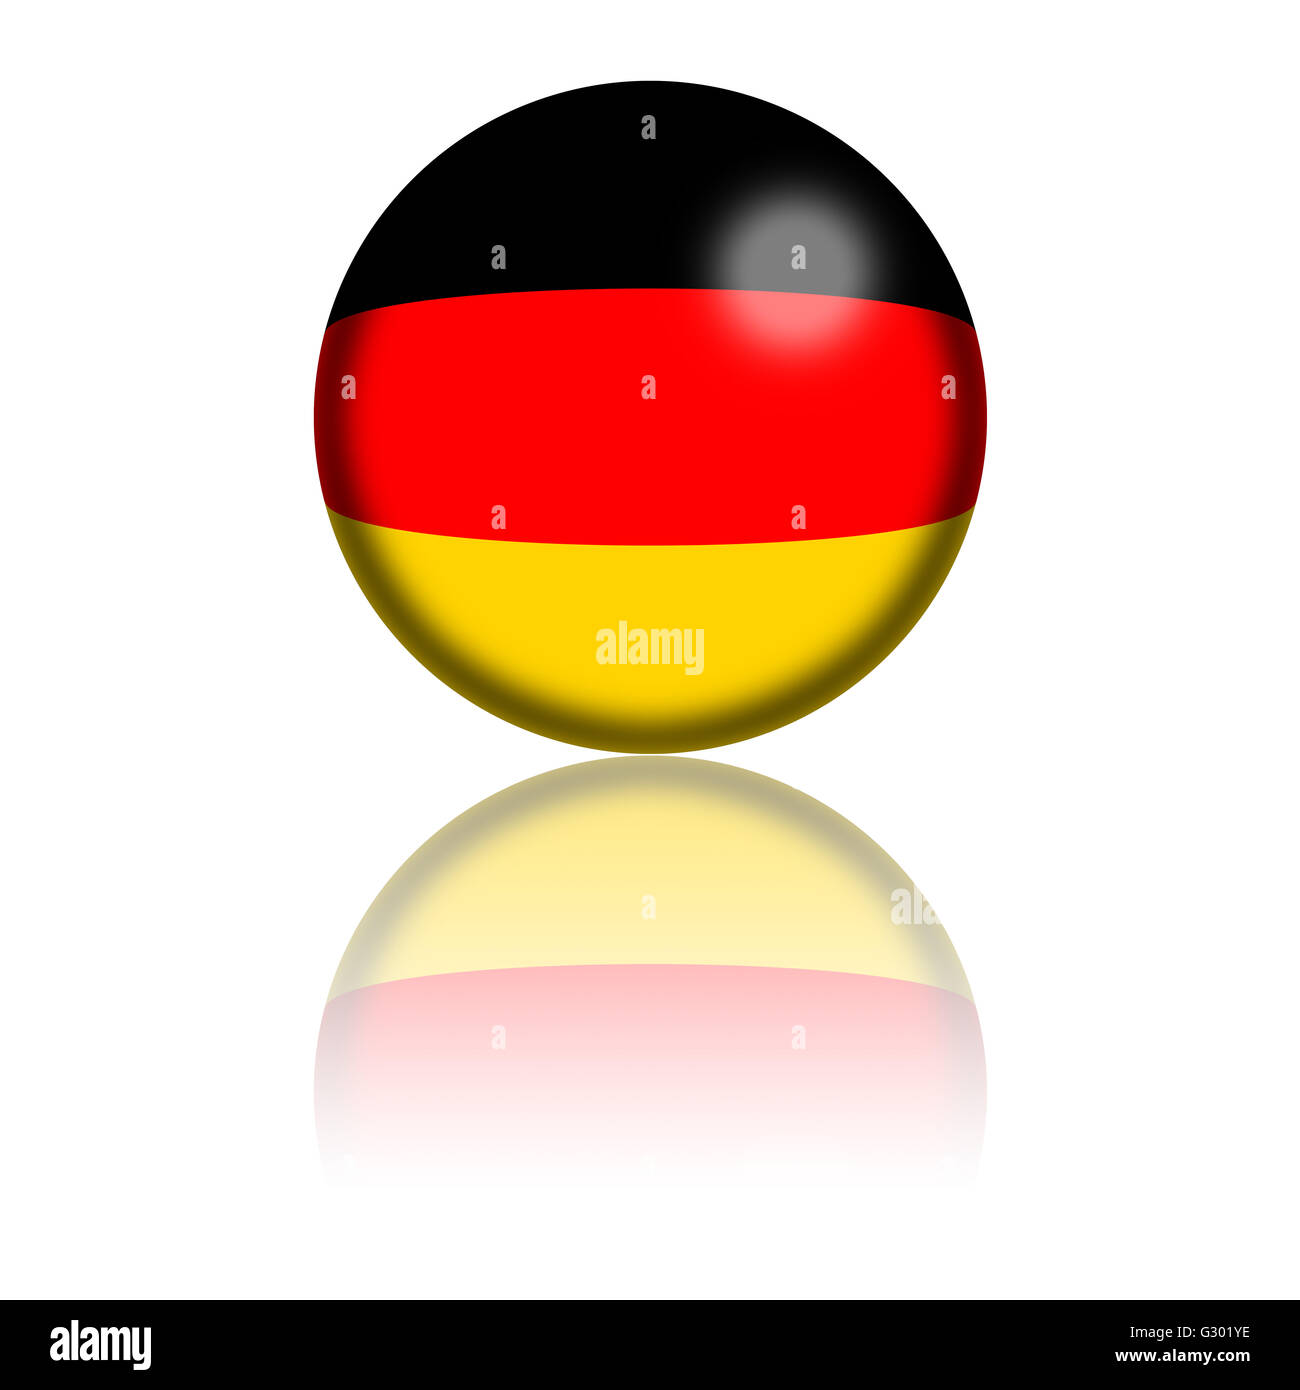 2x Sticker Round Roundel Flag Germany German